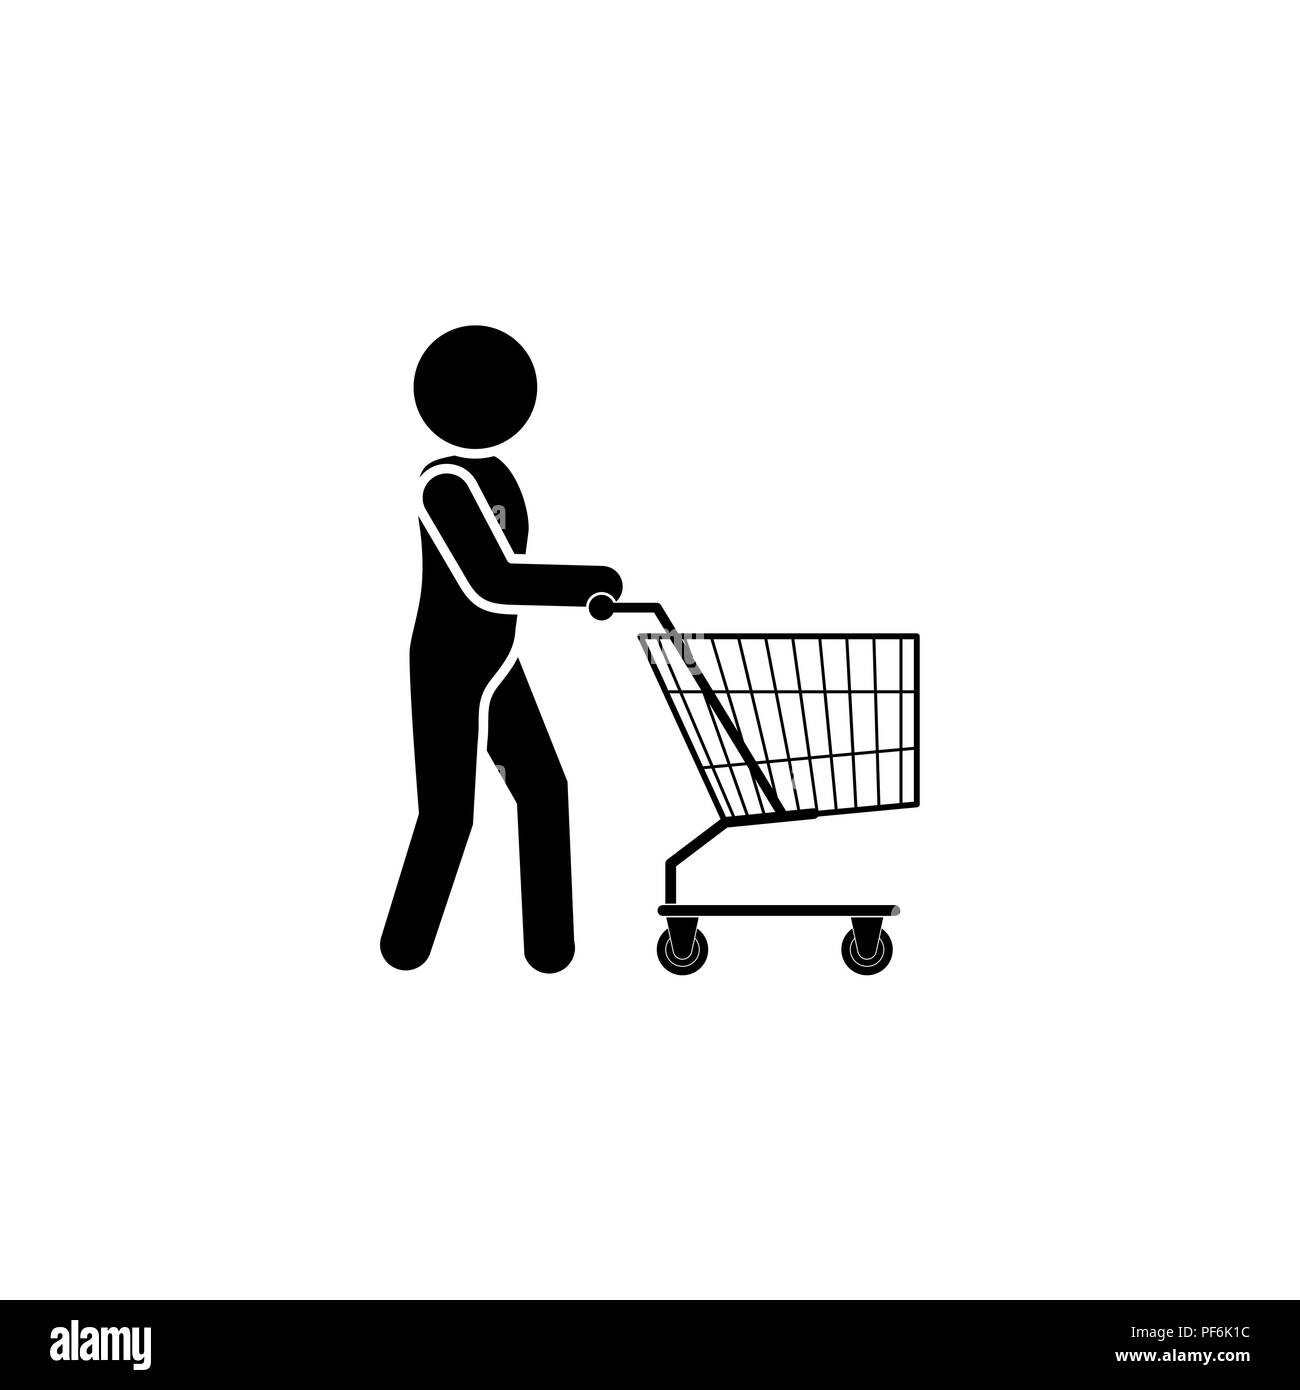 Mann mit Einkaufswagen Symbol schwarz auf weißem Hintergrund  Stock-Vektorgrafik - Alamy